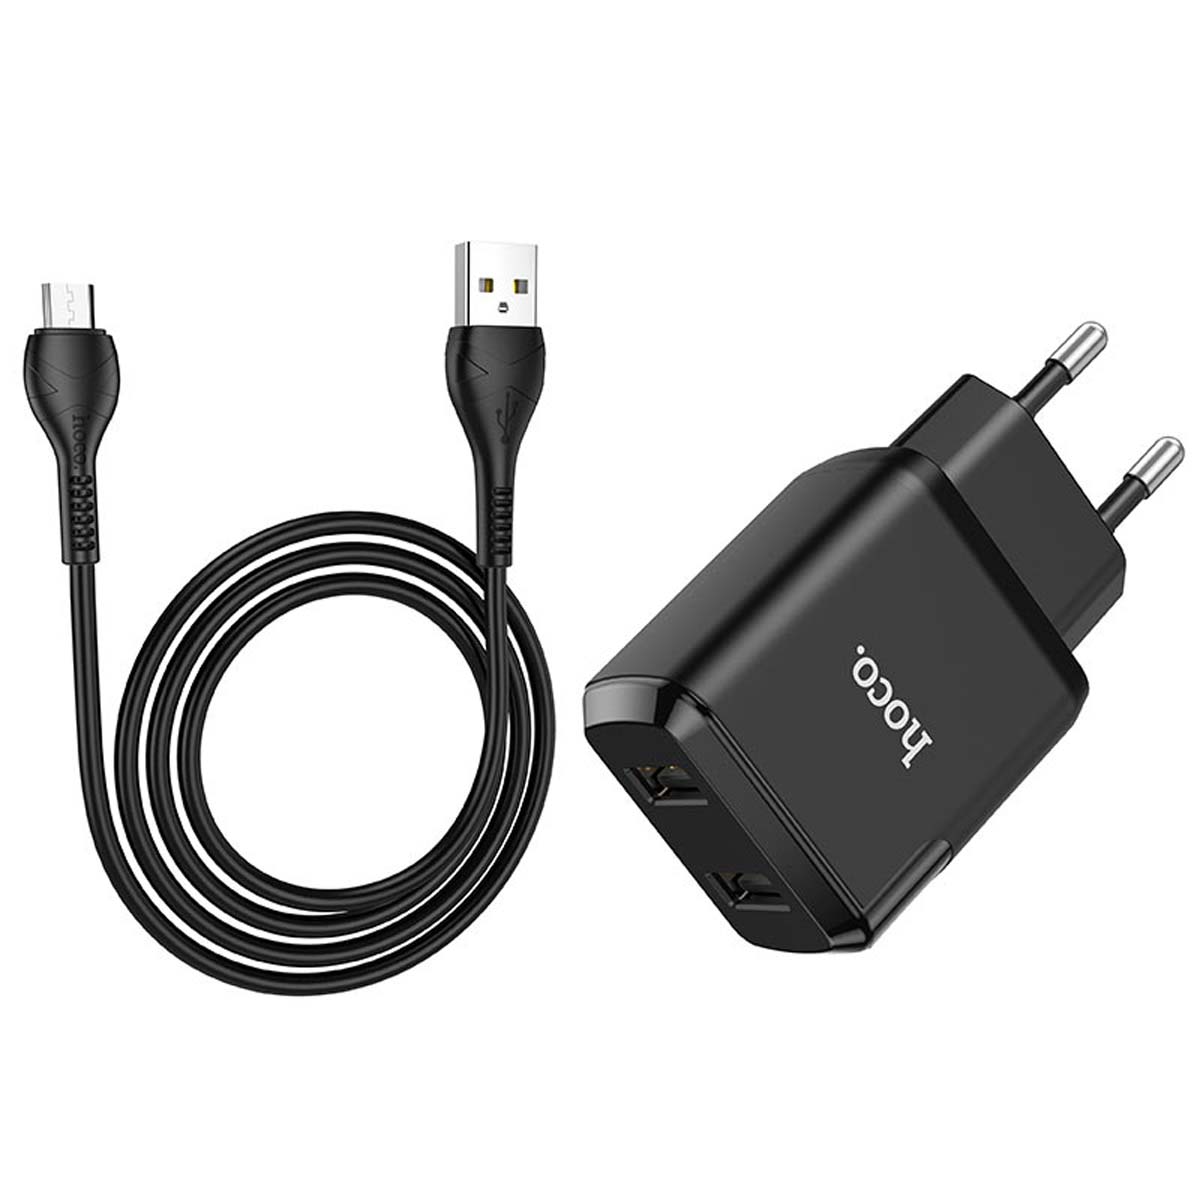 СЗУ (Сетевое зарядное устройство) HOCO N7 Speedy с кабелем Micro USB, 2.1A, длина 1 метр, цвет черный